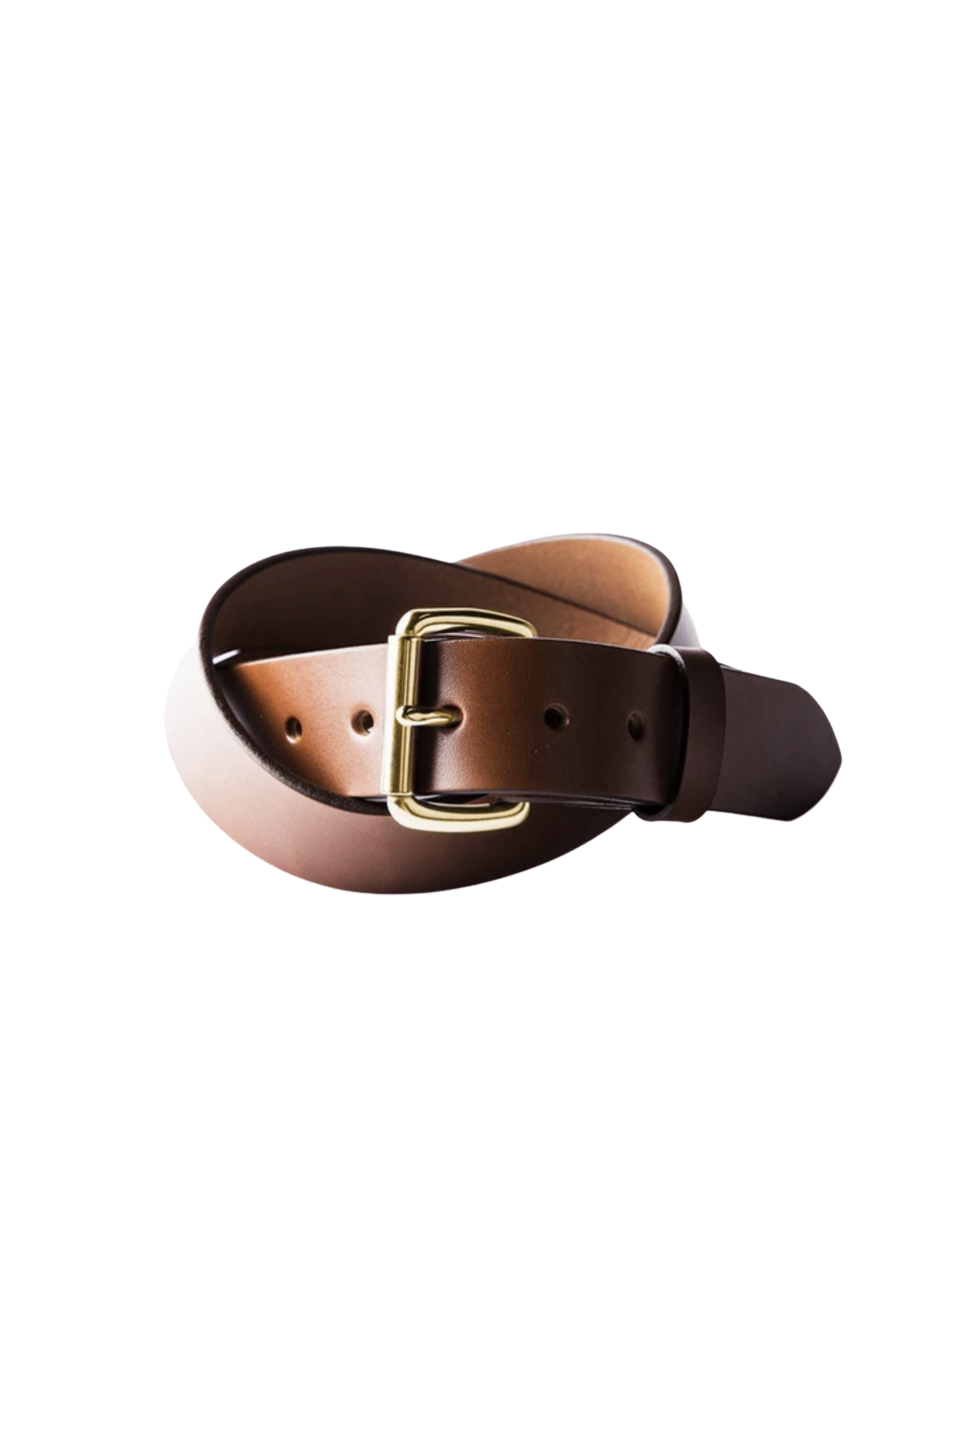 Tanner Goods - Standard Belt - Cognac/Brass